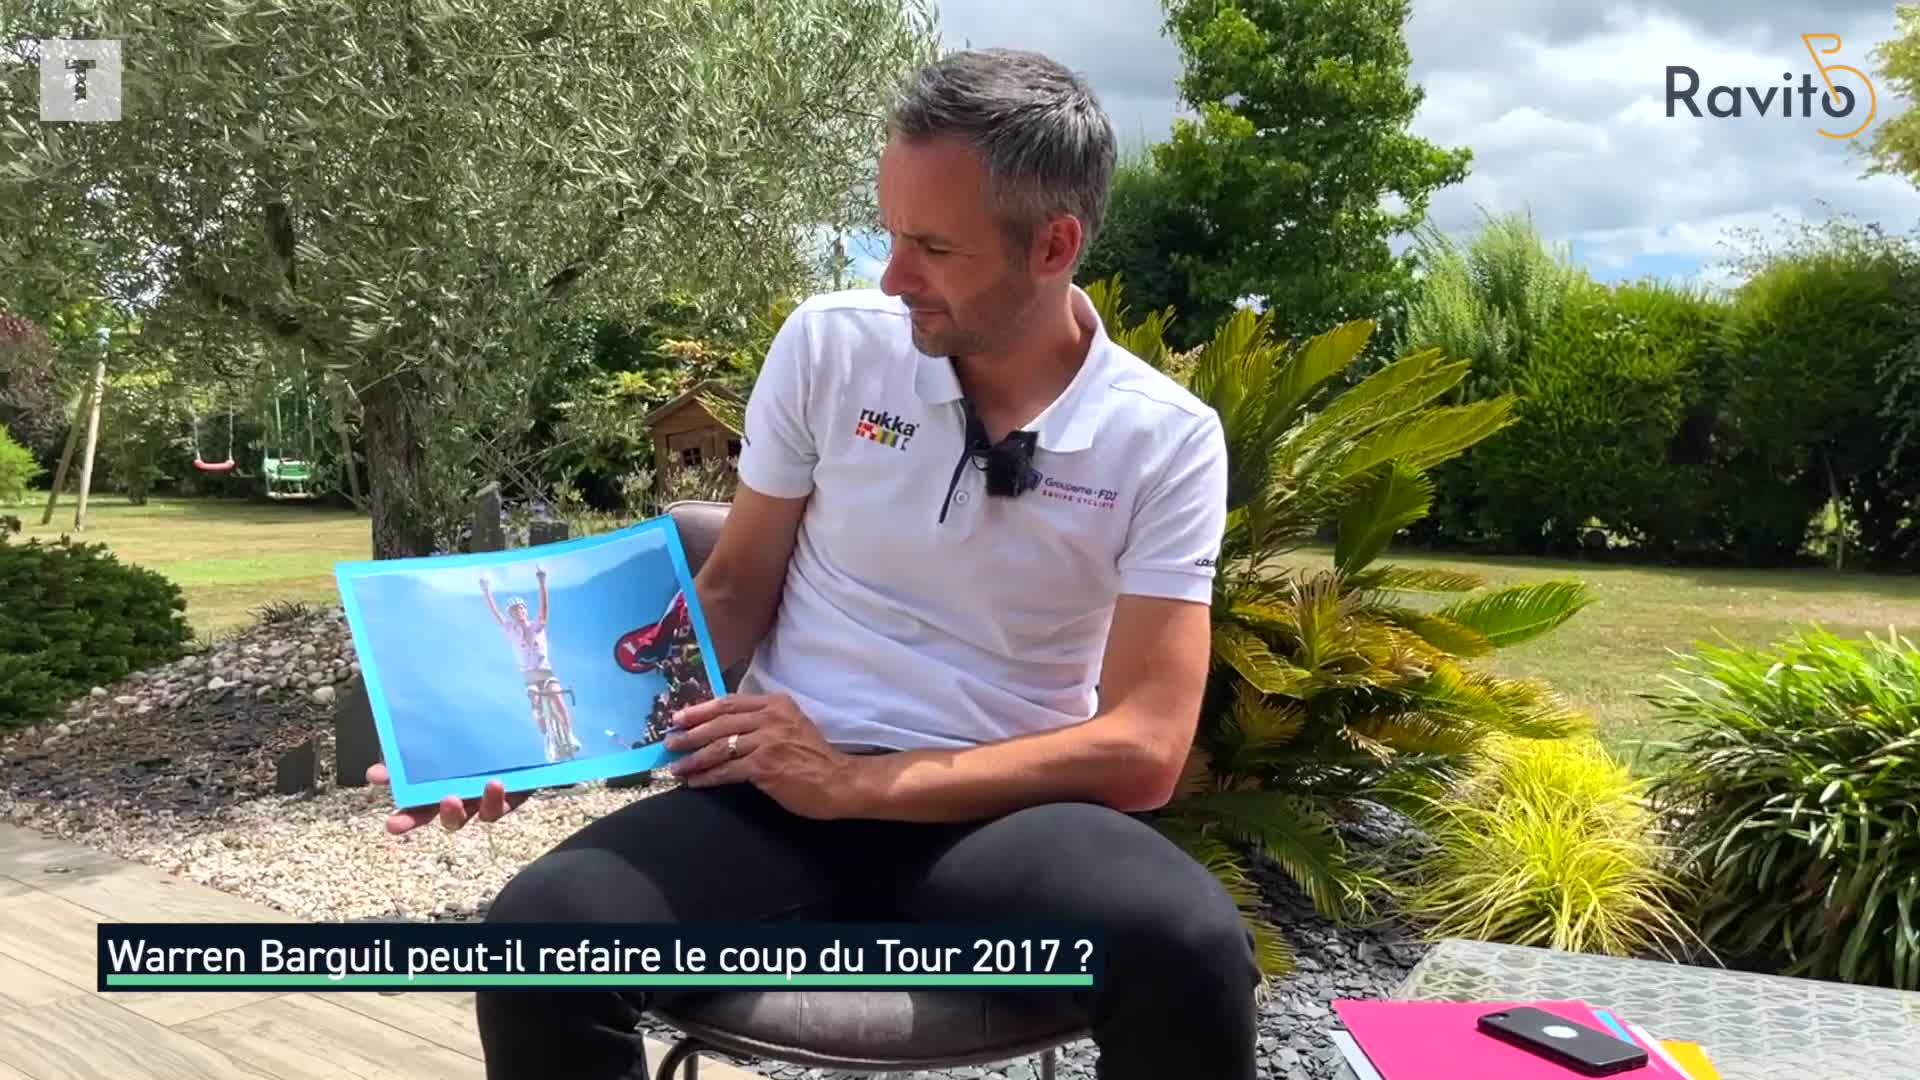 Ravito #23 : "L'année Gaudu sur le Tour de France", l'analyse de Benoît Vaugrenard